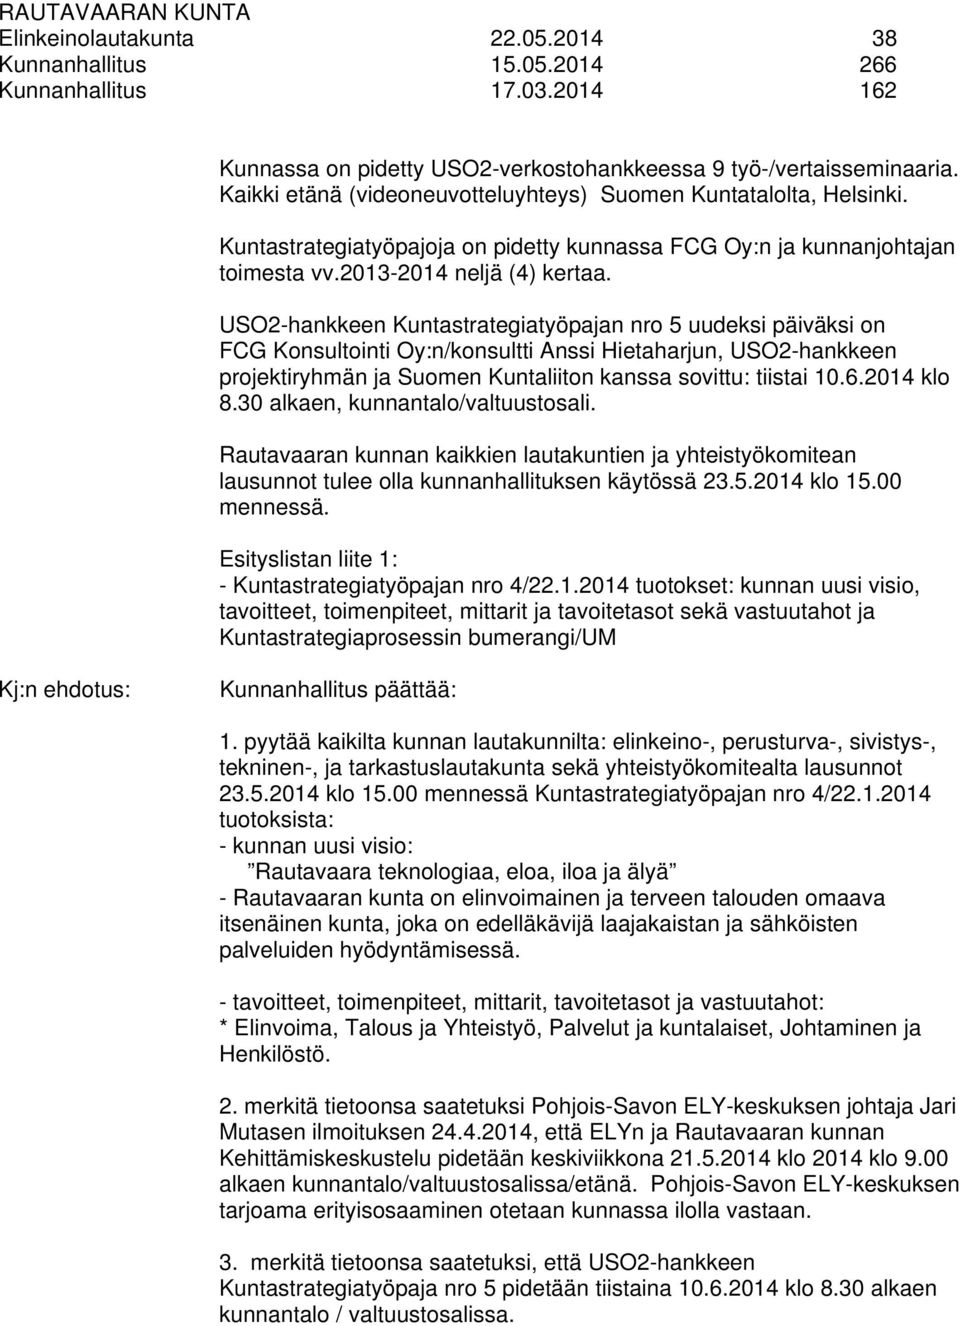 USO2-hankkeen Kuntastrategiatyöpajan nro 5 uudeksi päiväksi on FCG Konsultointi Oy:n/konsultti Anssi Hietaharjun, USO2-hankkeen projektiryhmän ja Suomen Kuntaliiton kanssa sovittu: tiistai 10.6.